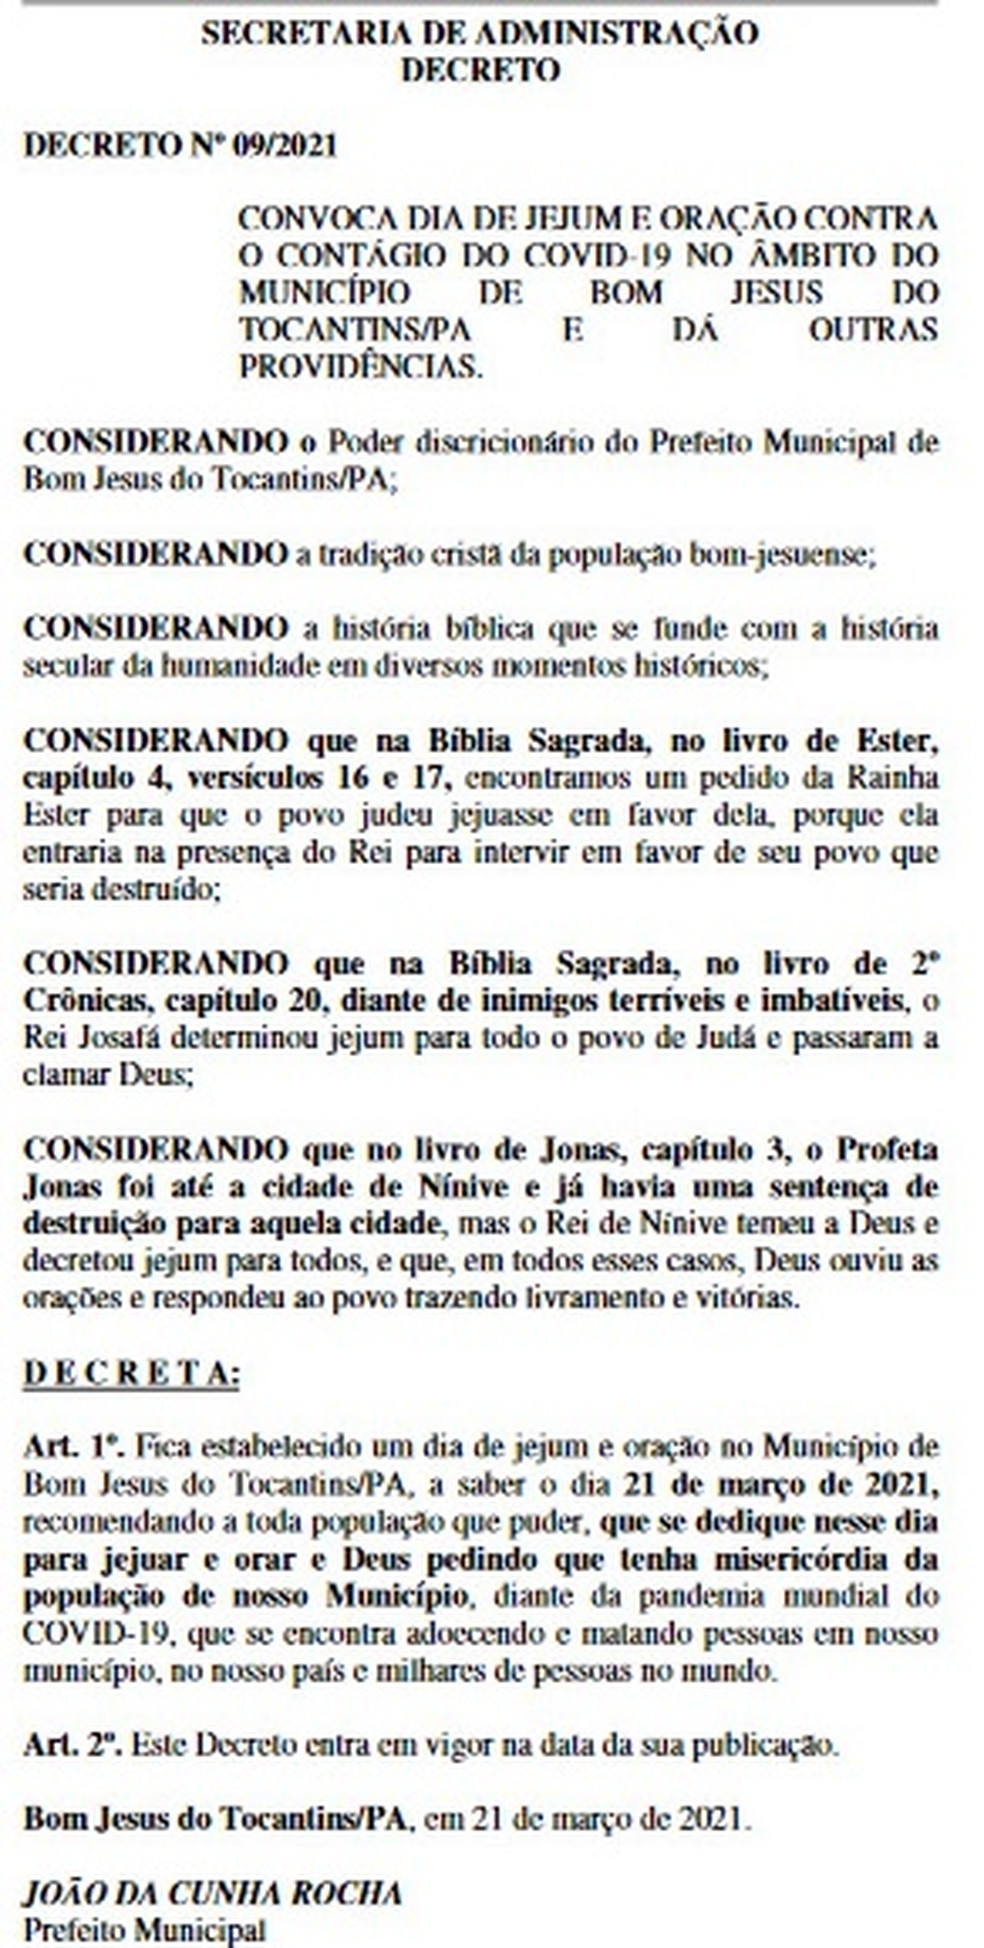 Final de semana - Prefeitura Municipal de Bom Jesus do Tocantins